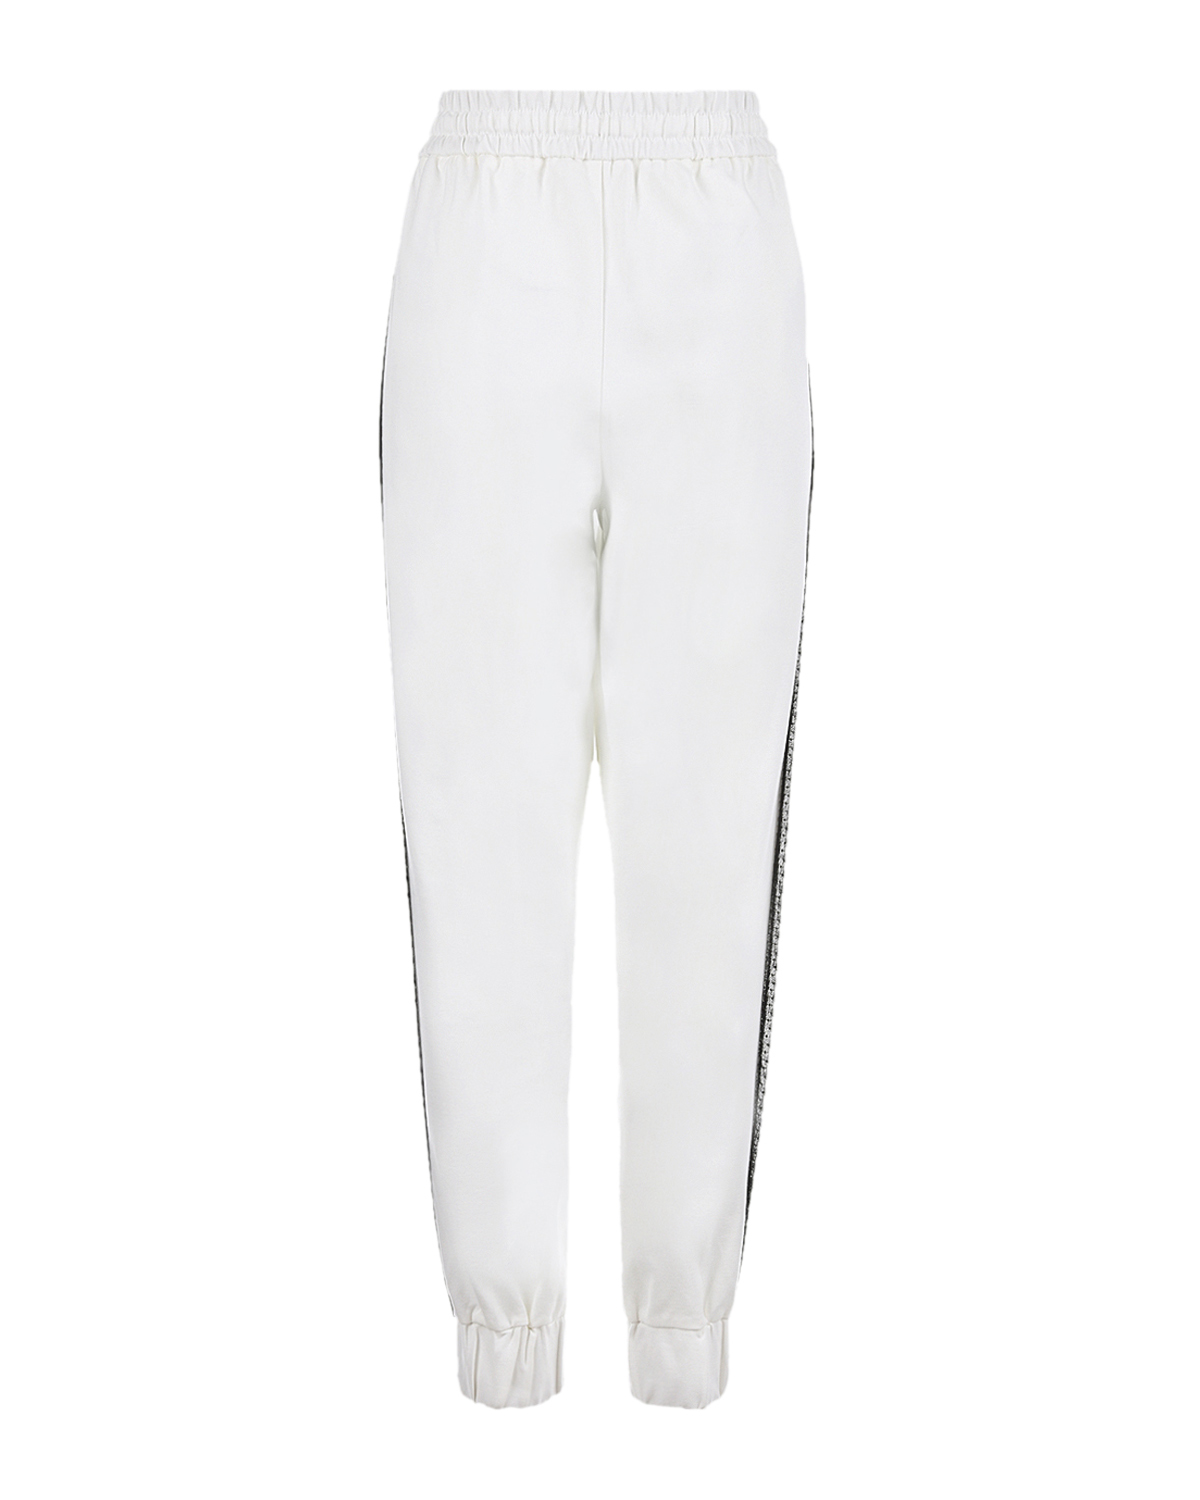 Белые спортивные брюки с черными лампасами TWINSET, размер 42, цвет белый - фото 5